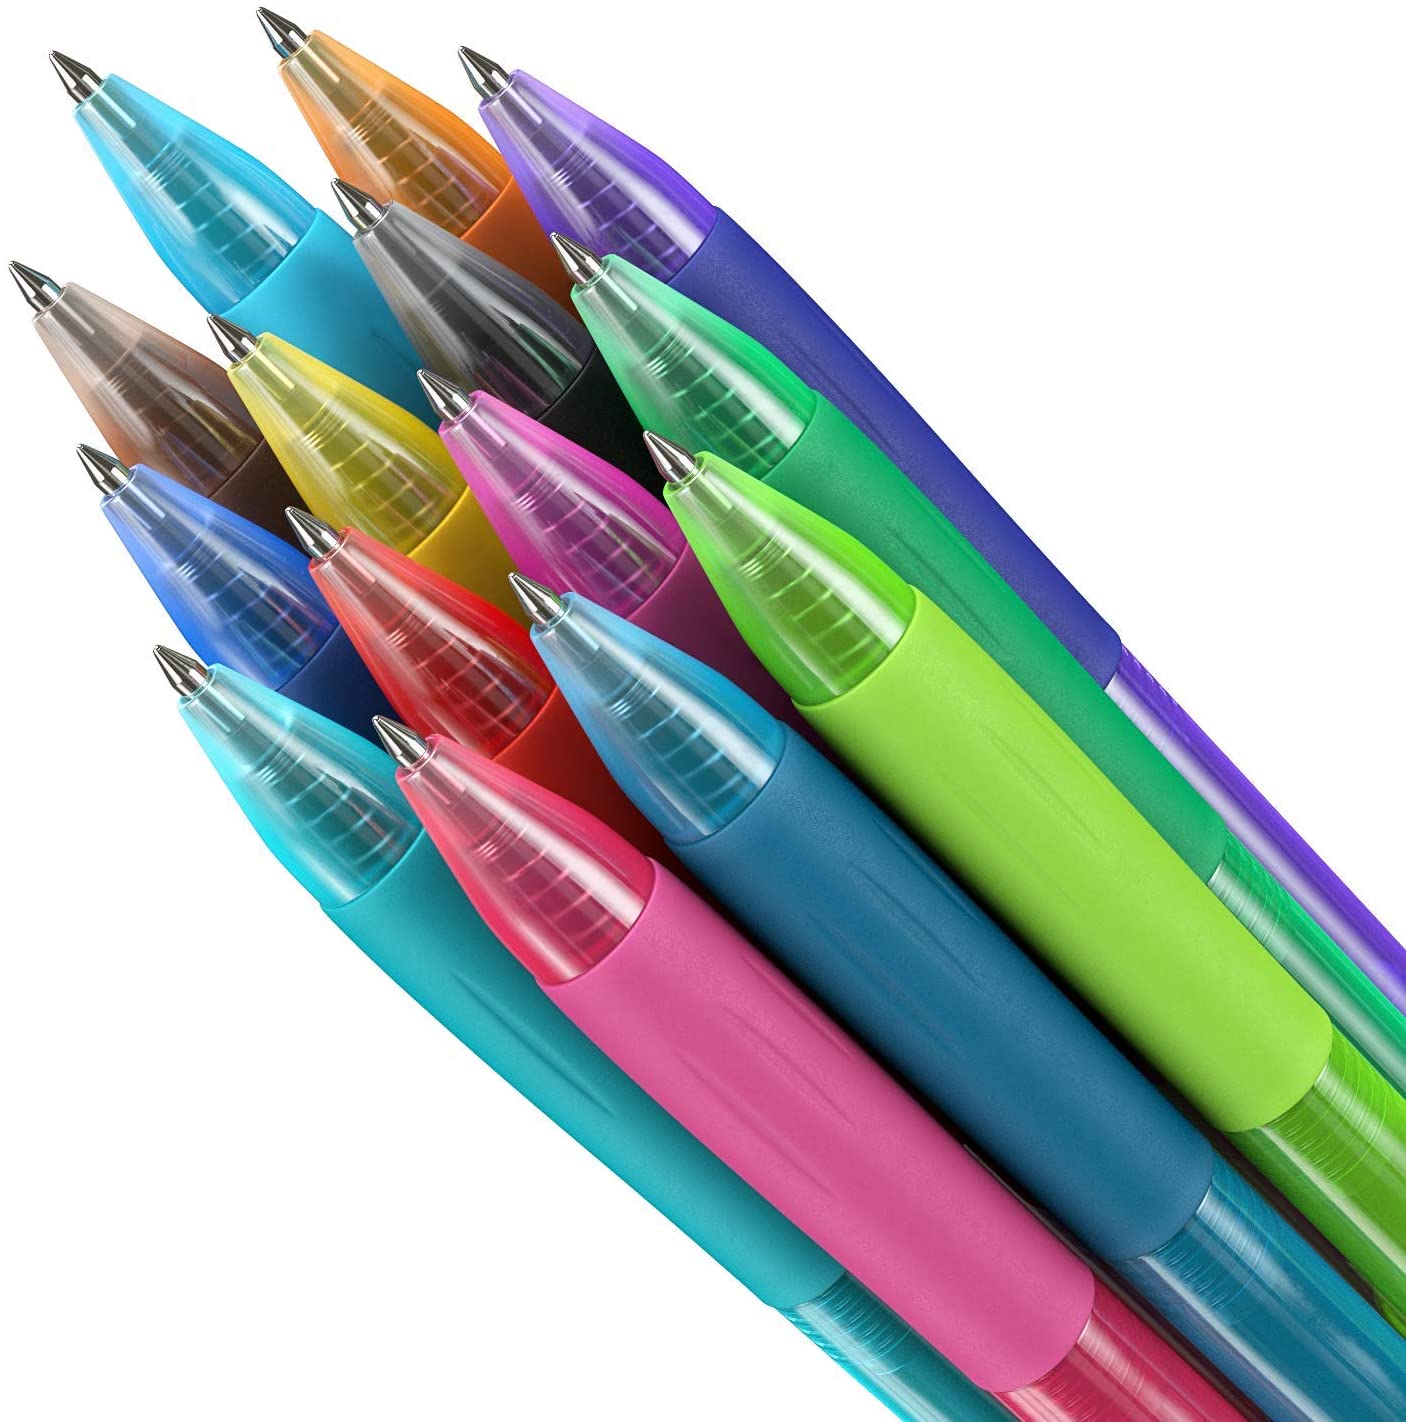 Glitter Gel Pens, 100 Color Glitter Pen Set for Indonesia